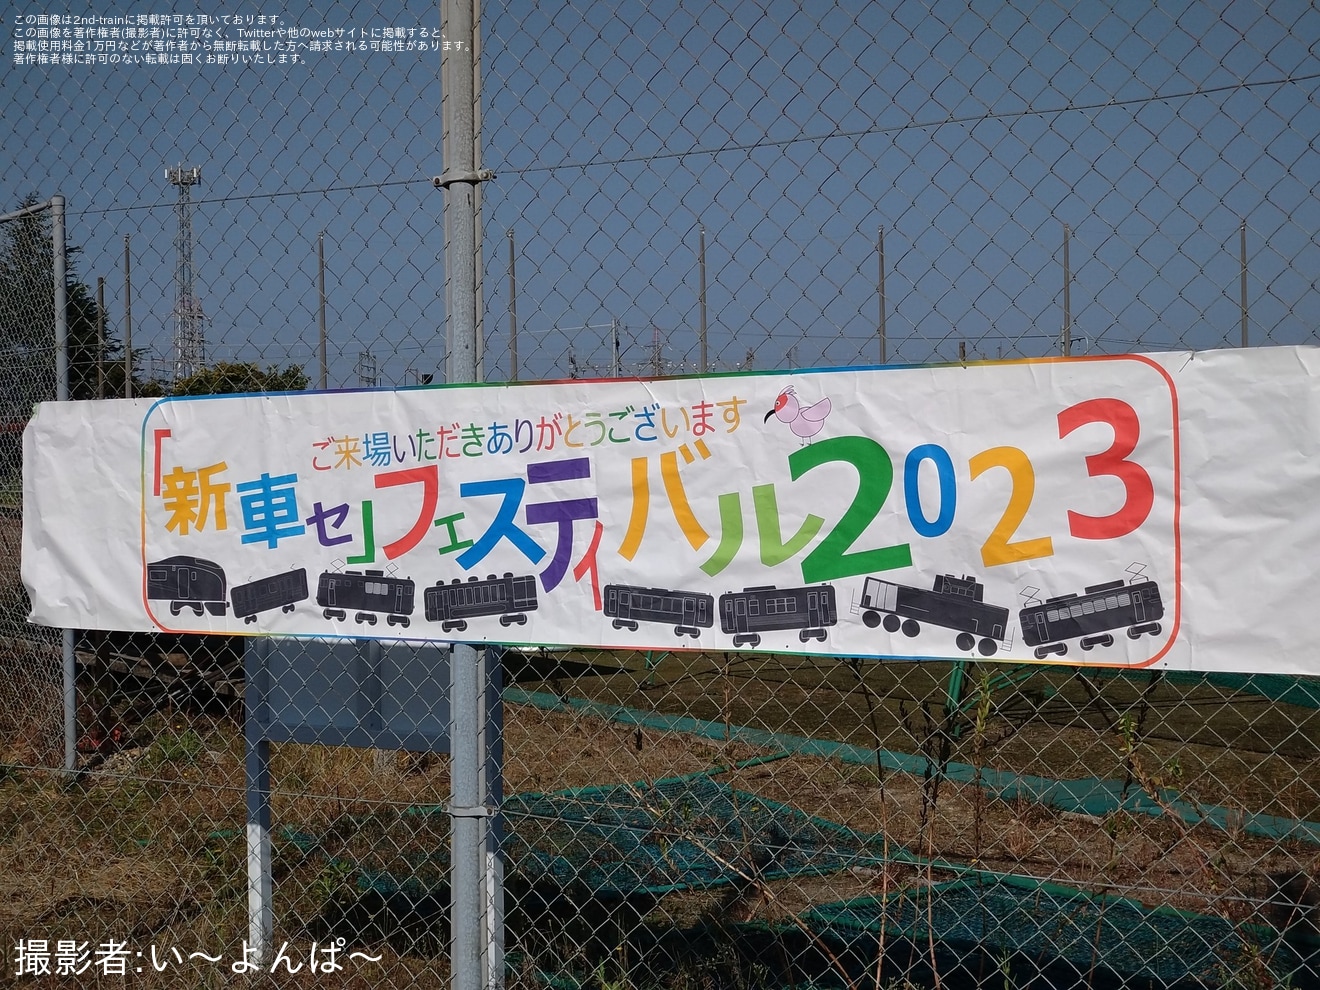 【JR東】新潟車両センター「『新車セ』フェスティバル 2023」開催の拡大写真